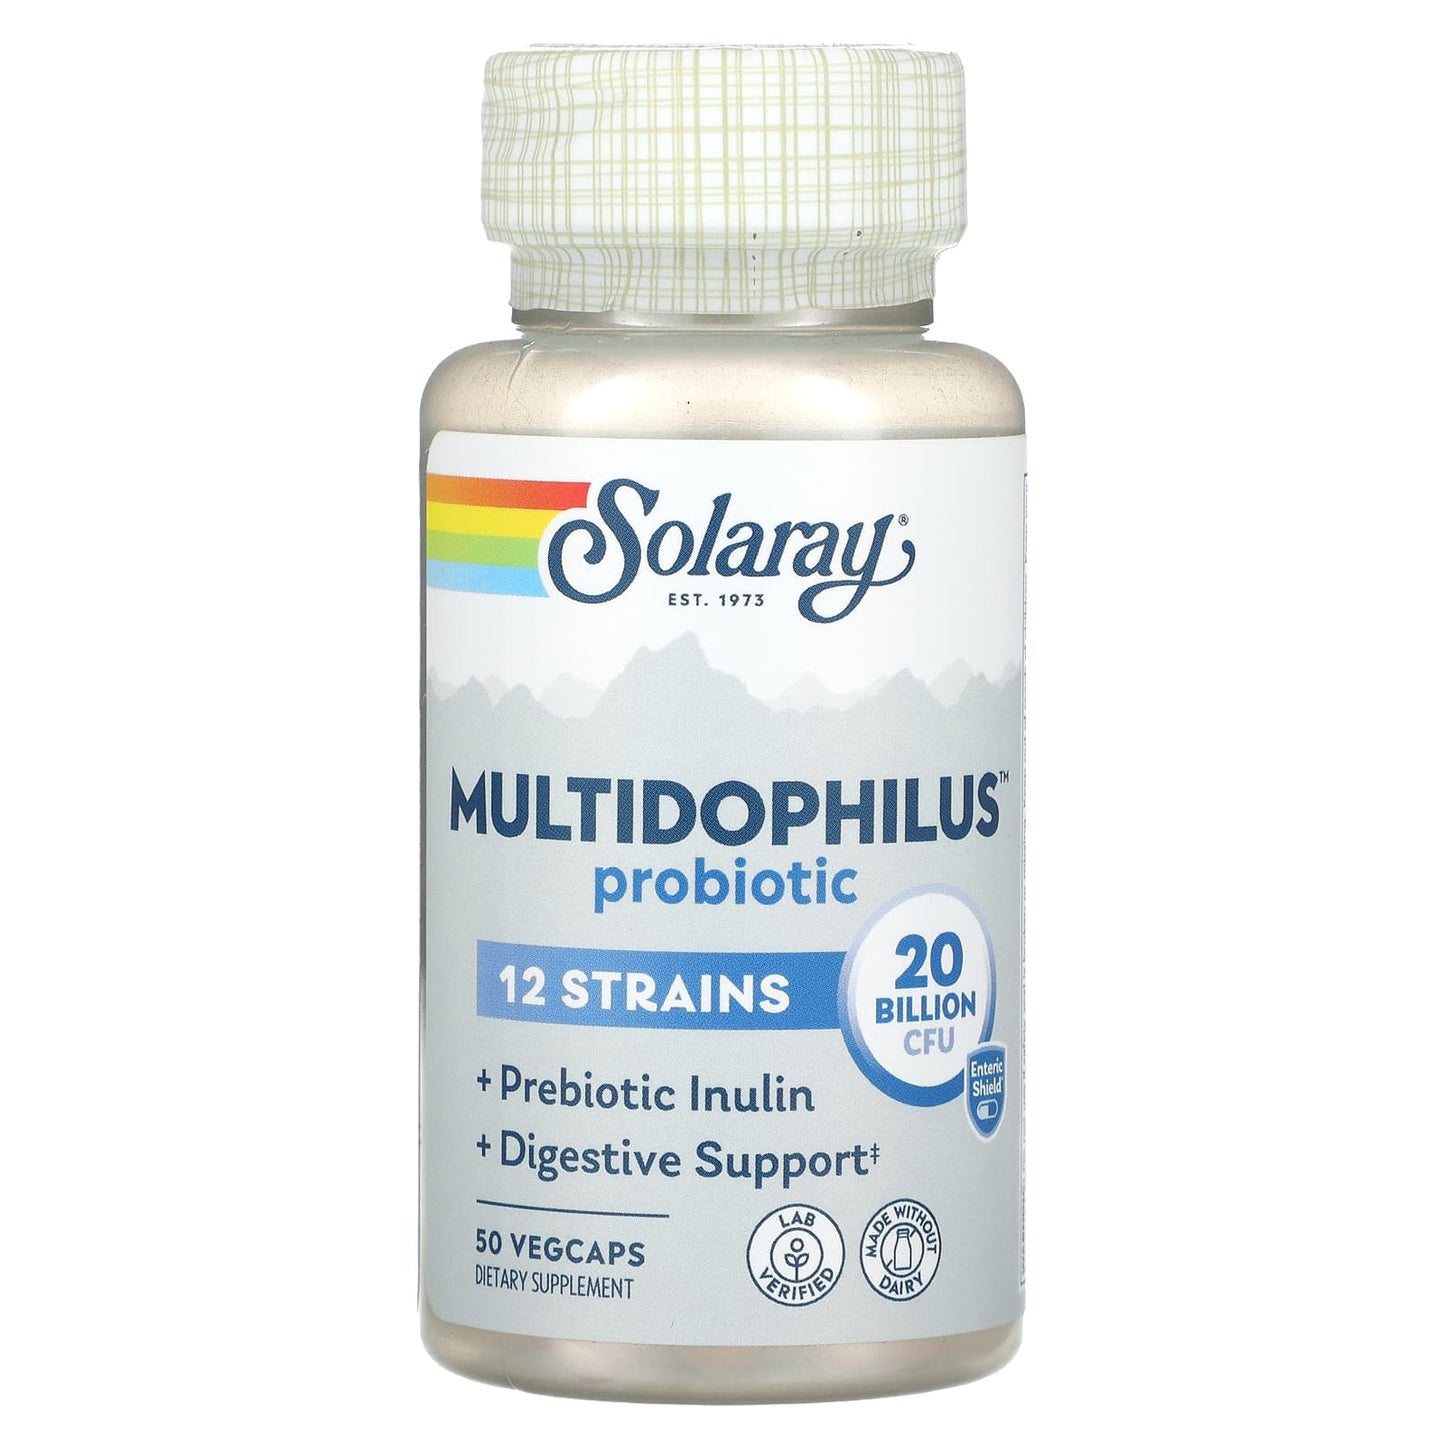 Solaray-Multidophilus Probiotic-20 Billion CFU-50 VegCaps